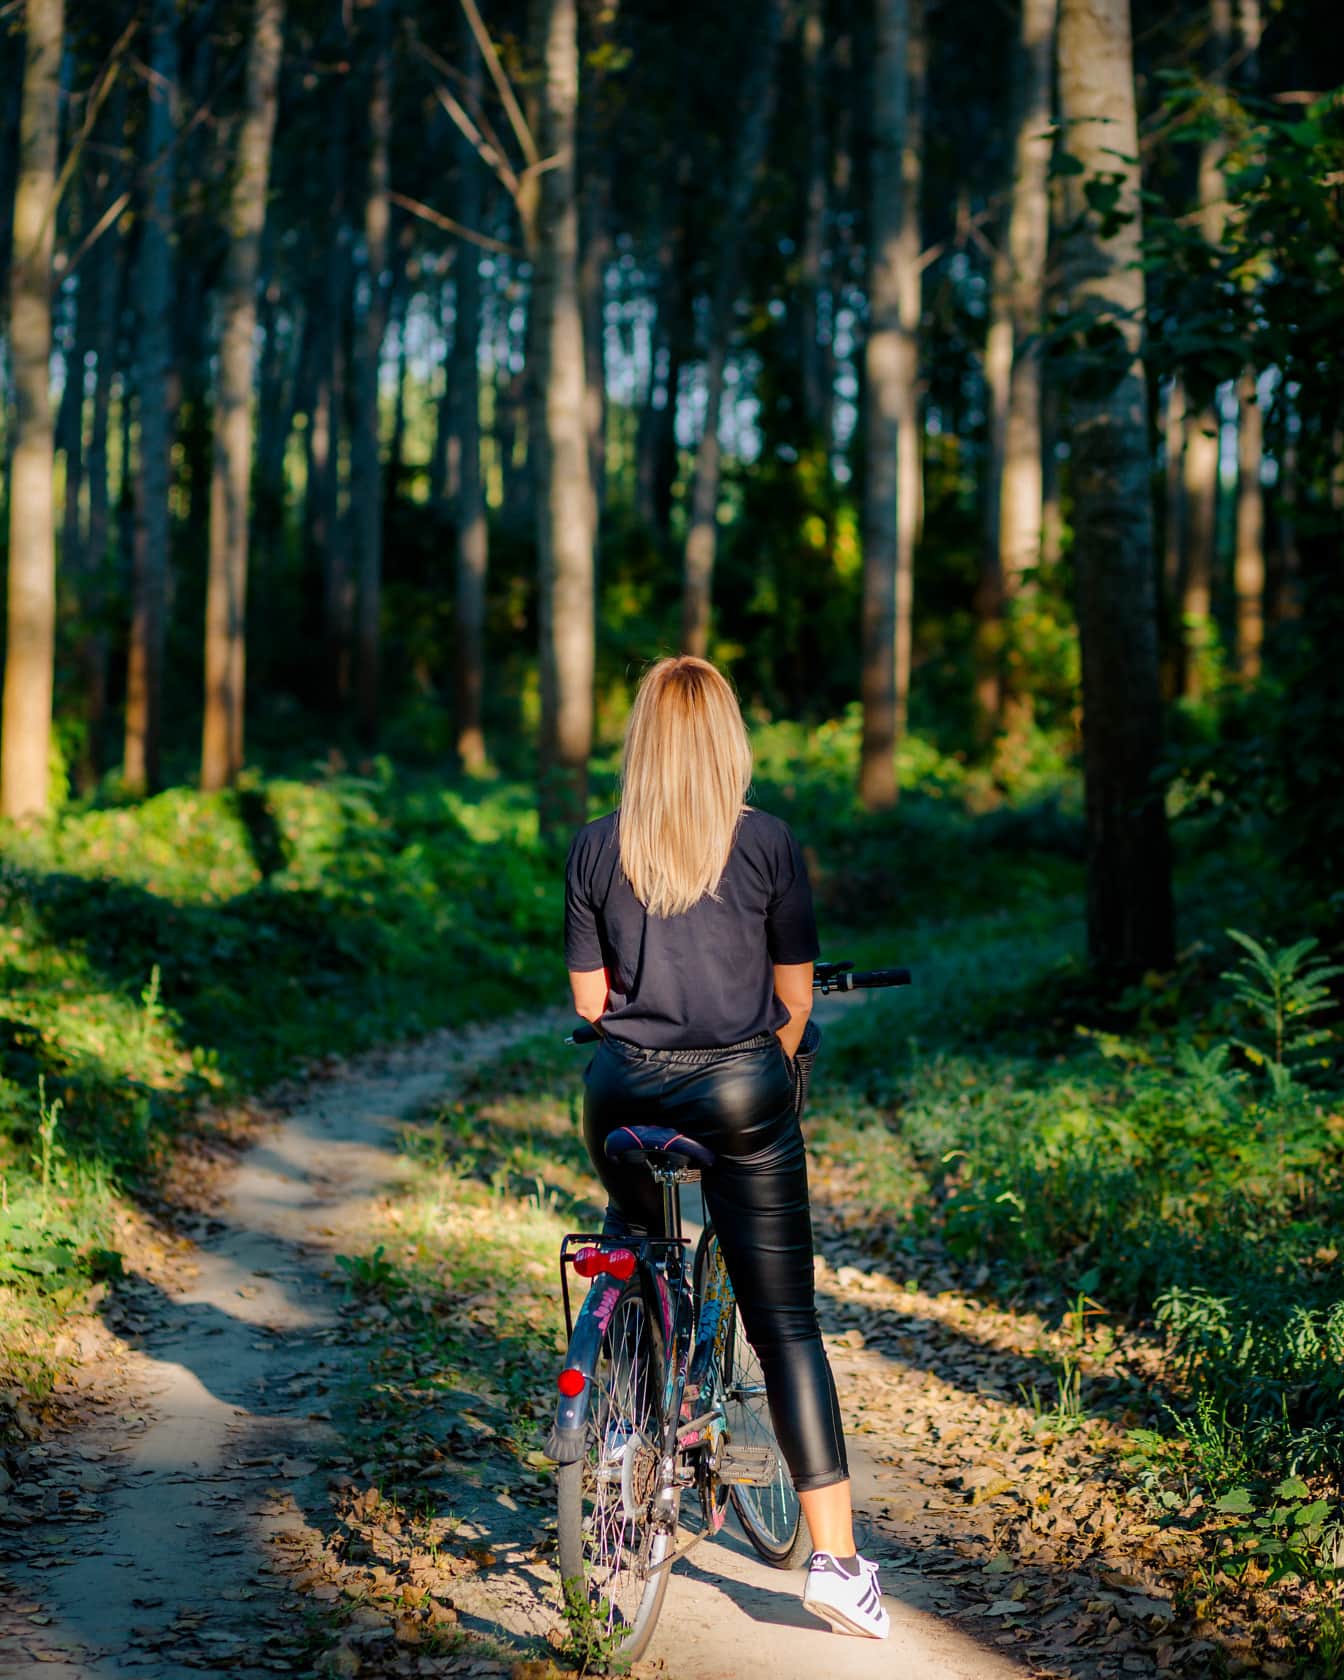 Adolescente dai capelli biondi in bicicletta sulla strada forestale